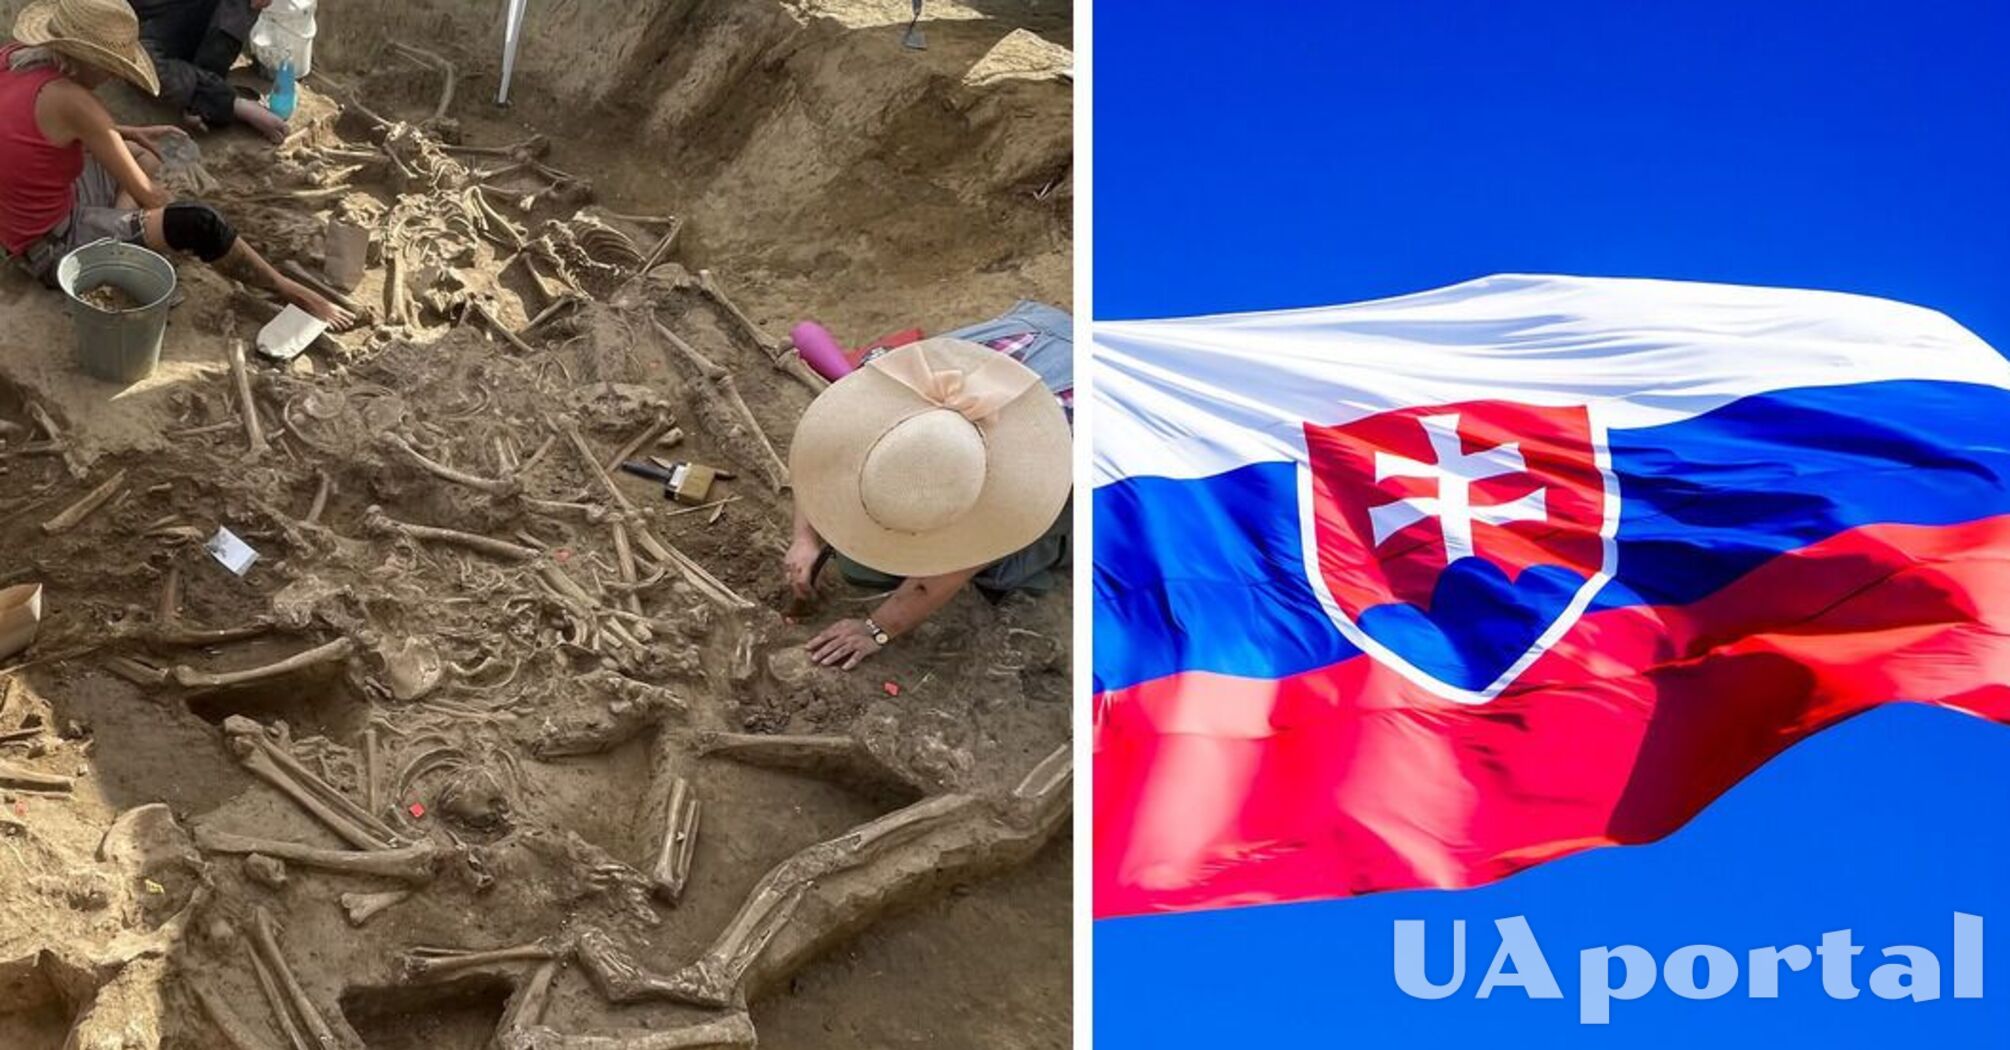 Археологи нашли останки трех десятков безголовых людей в поселении каменного века в Словакии (фото)